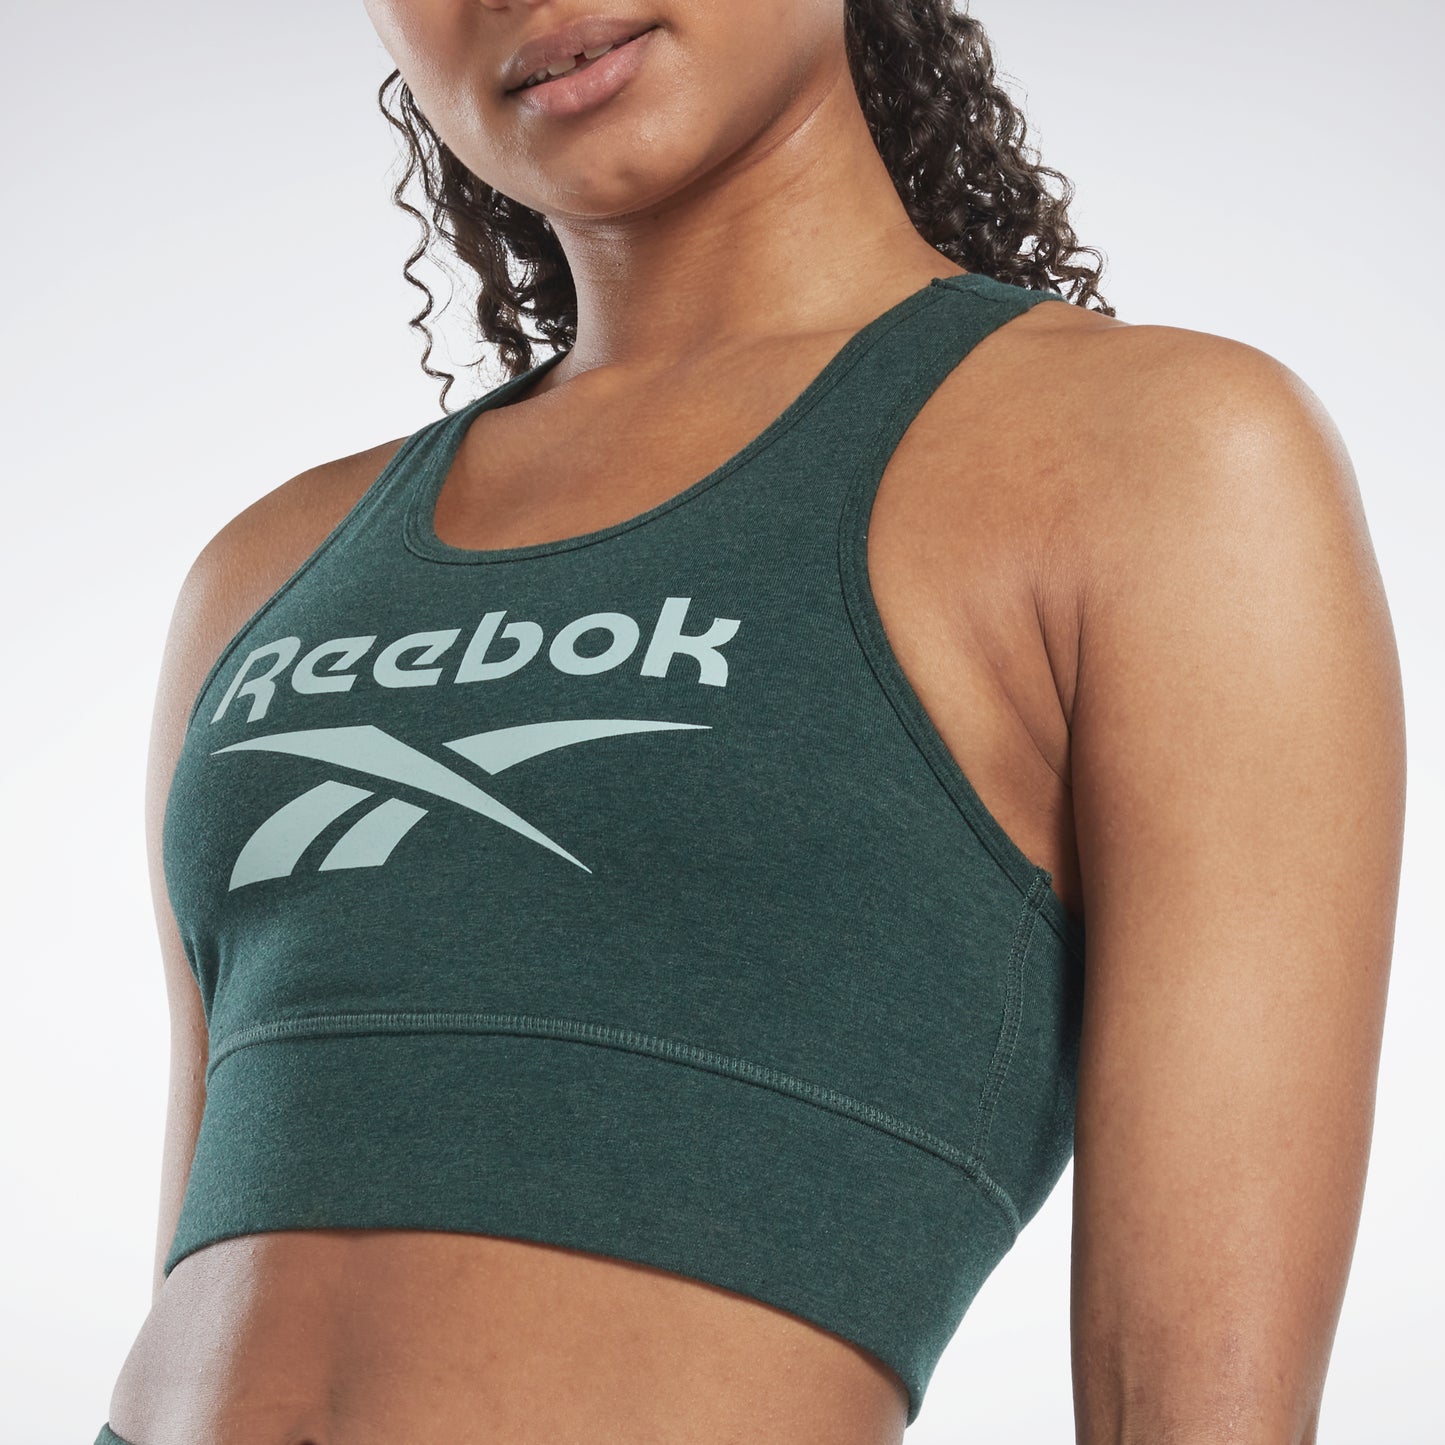 REEBOK Women Sports Bra - Buy REEBOK Women Sports Bra Online at